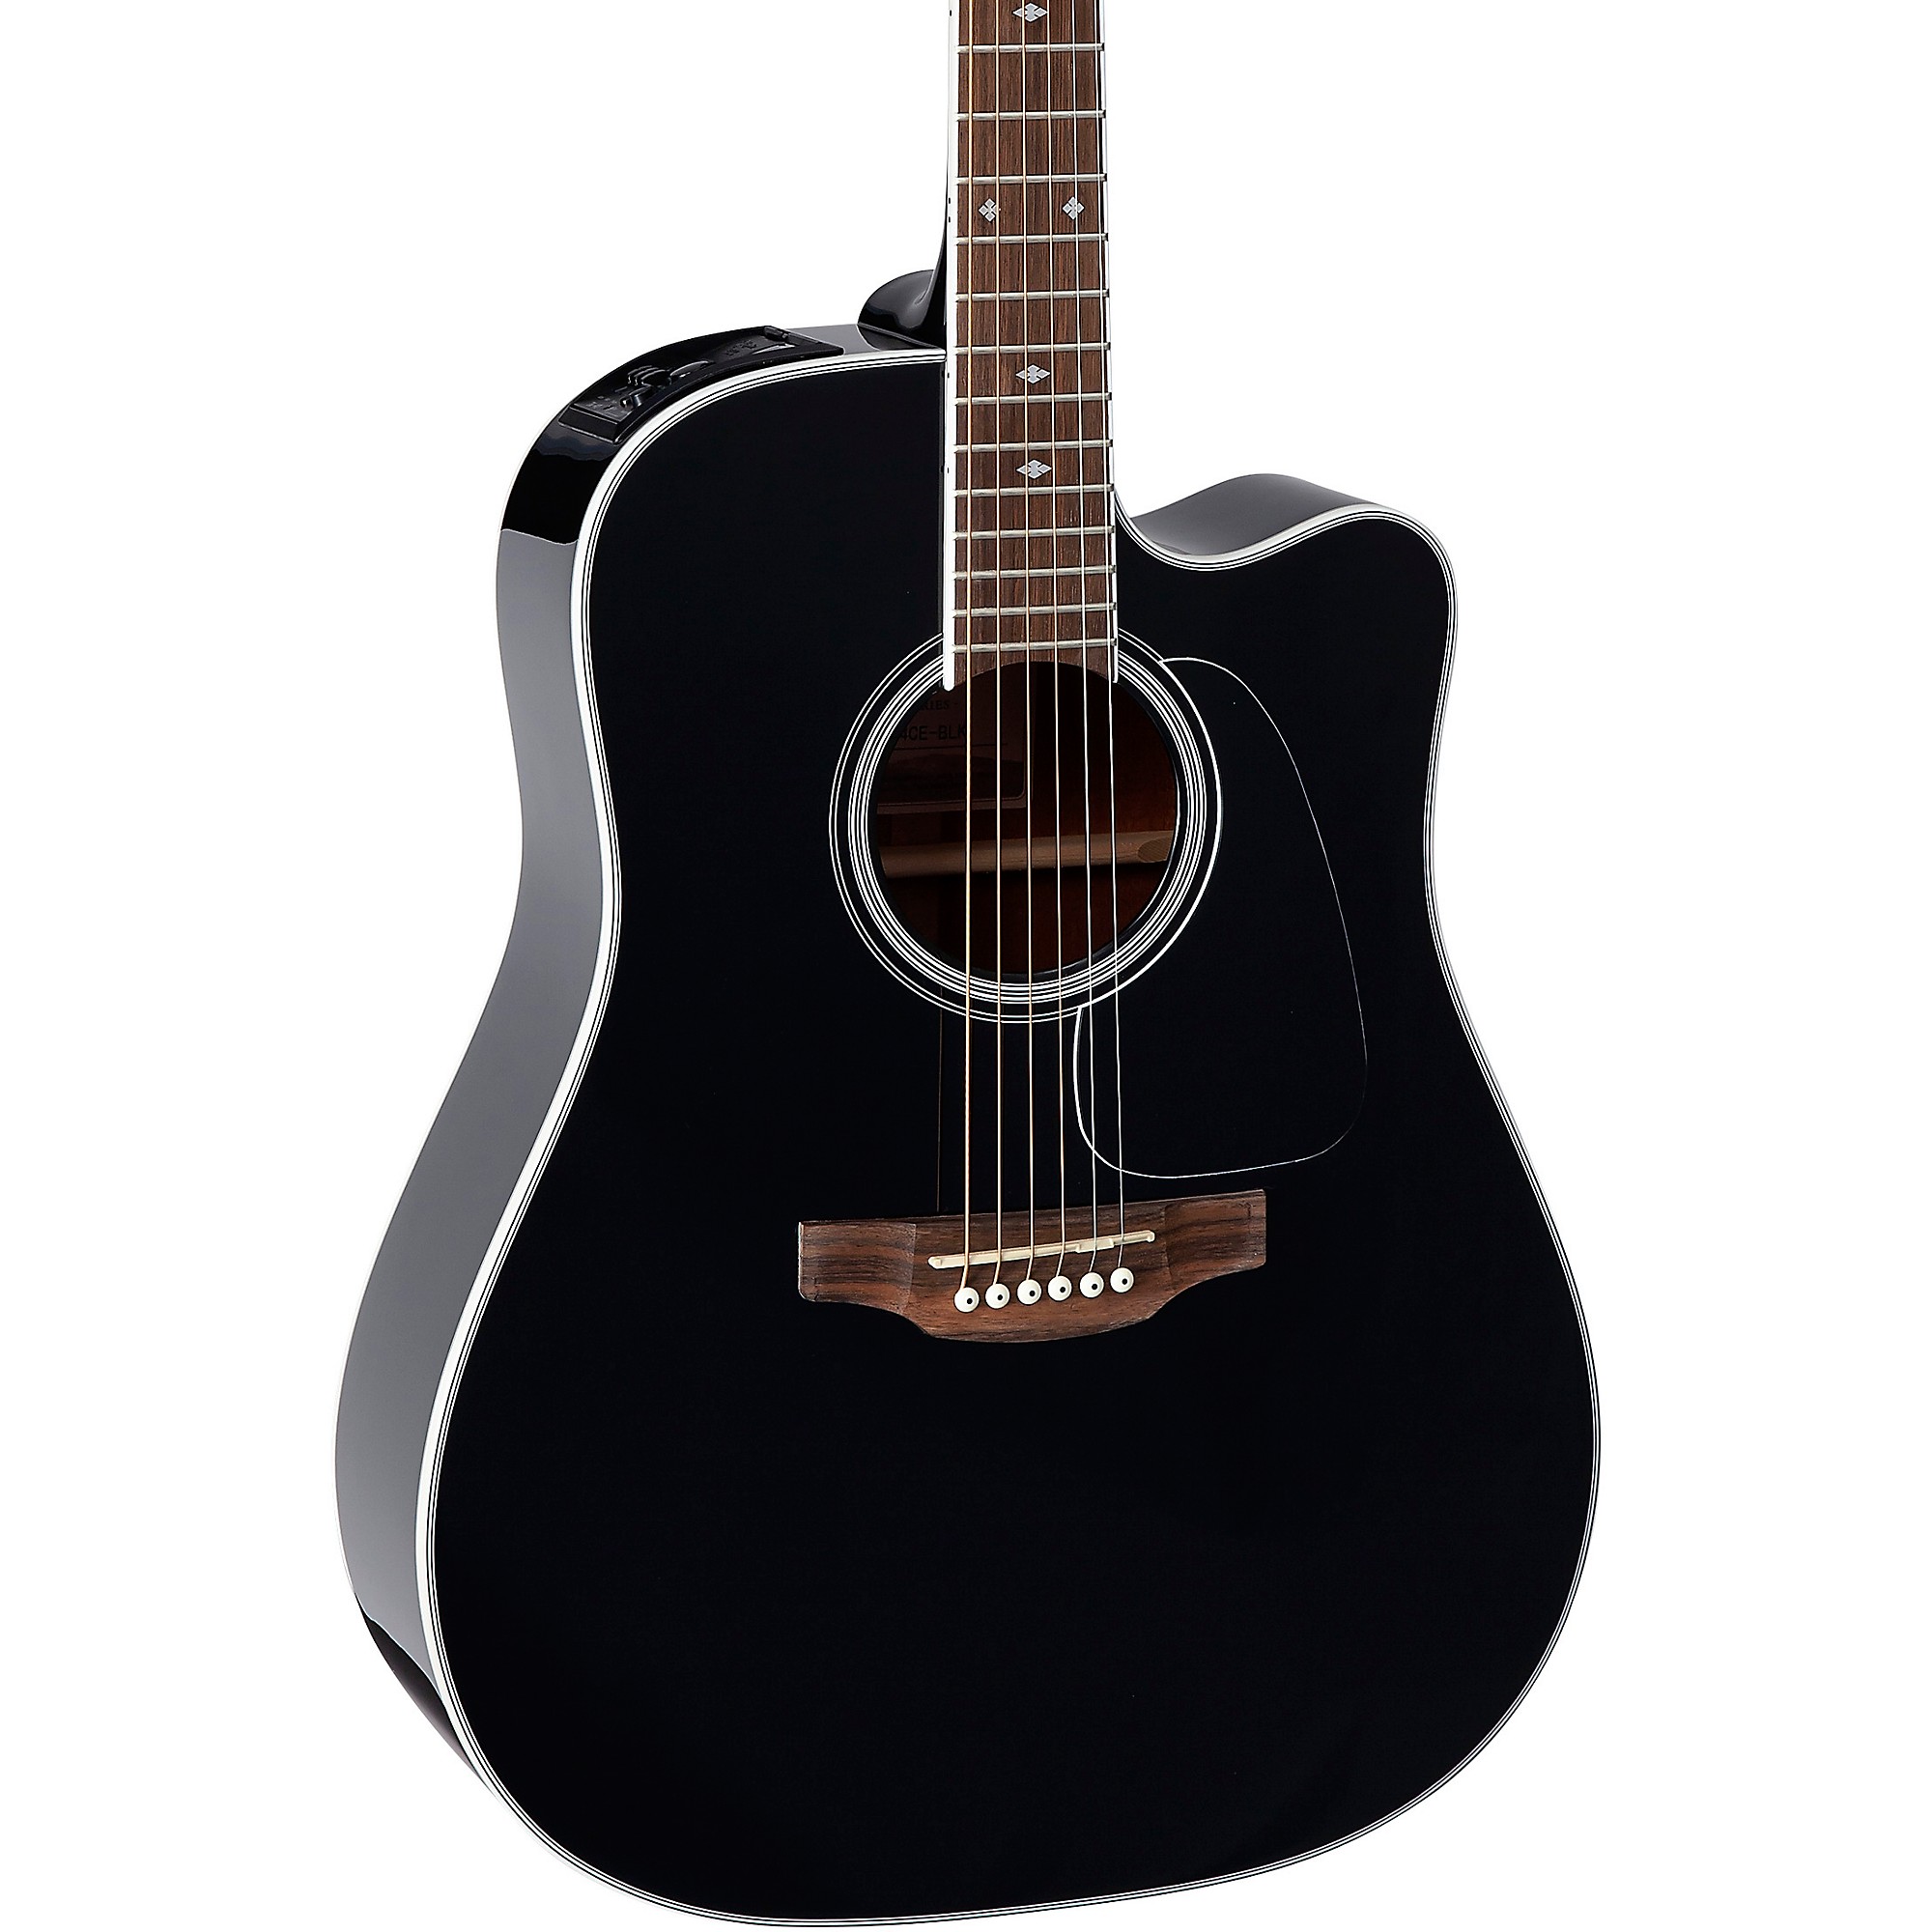 Акустически-электрическая гитара Takamine GD34CE Dreadnought, черная цена и фото